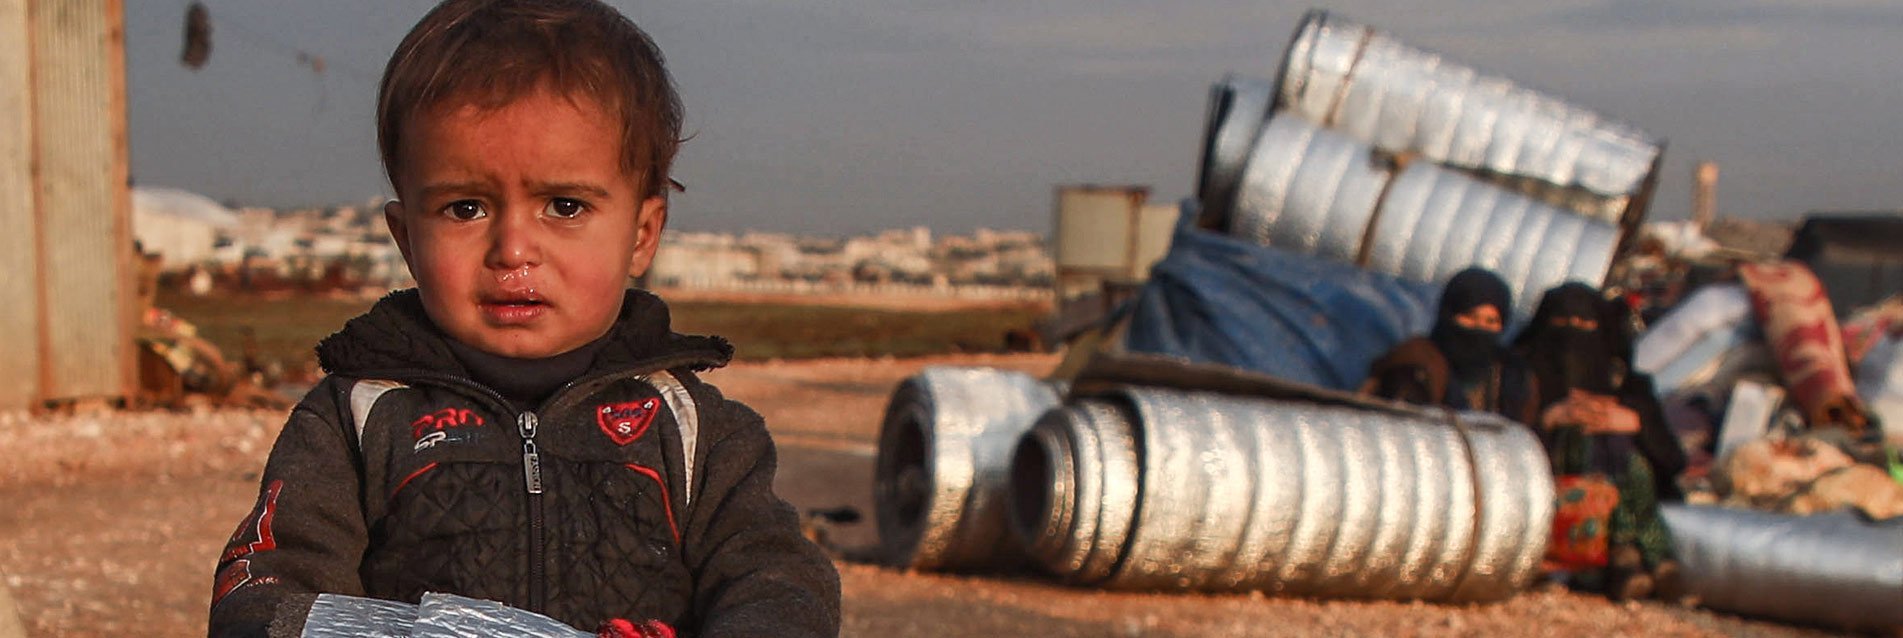 Crise humanitaire en Syrie : la Fondation de France se mobilise